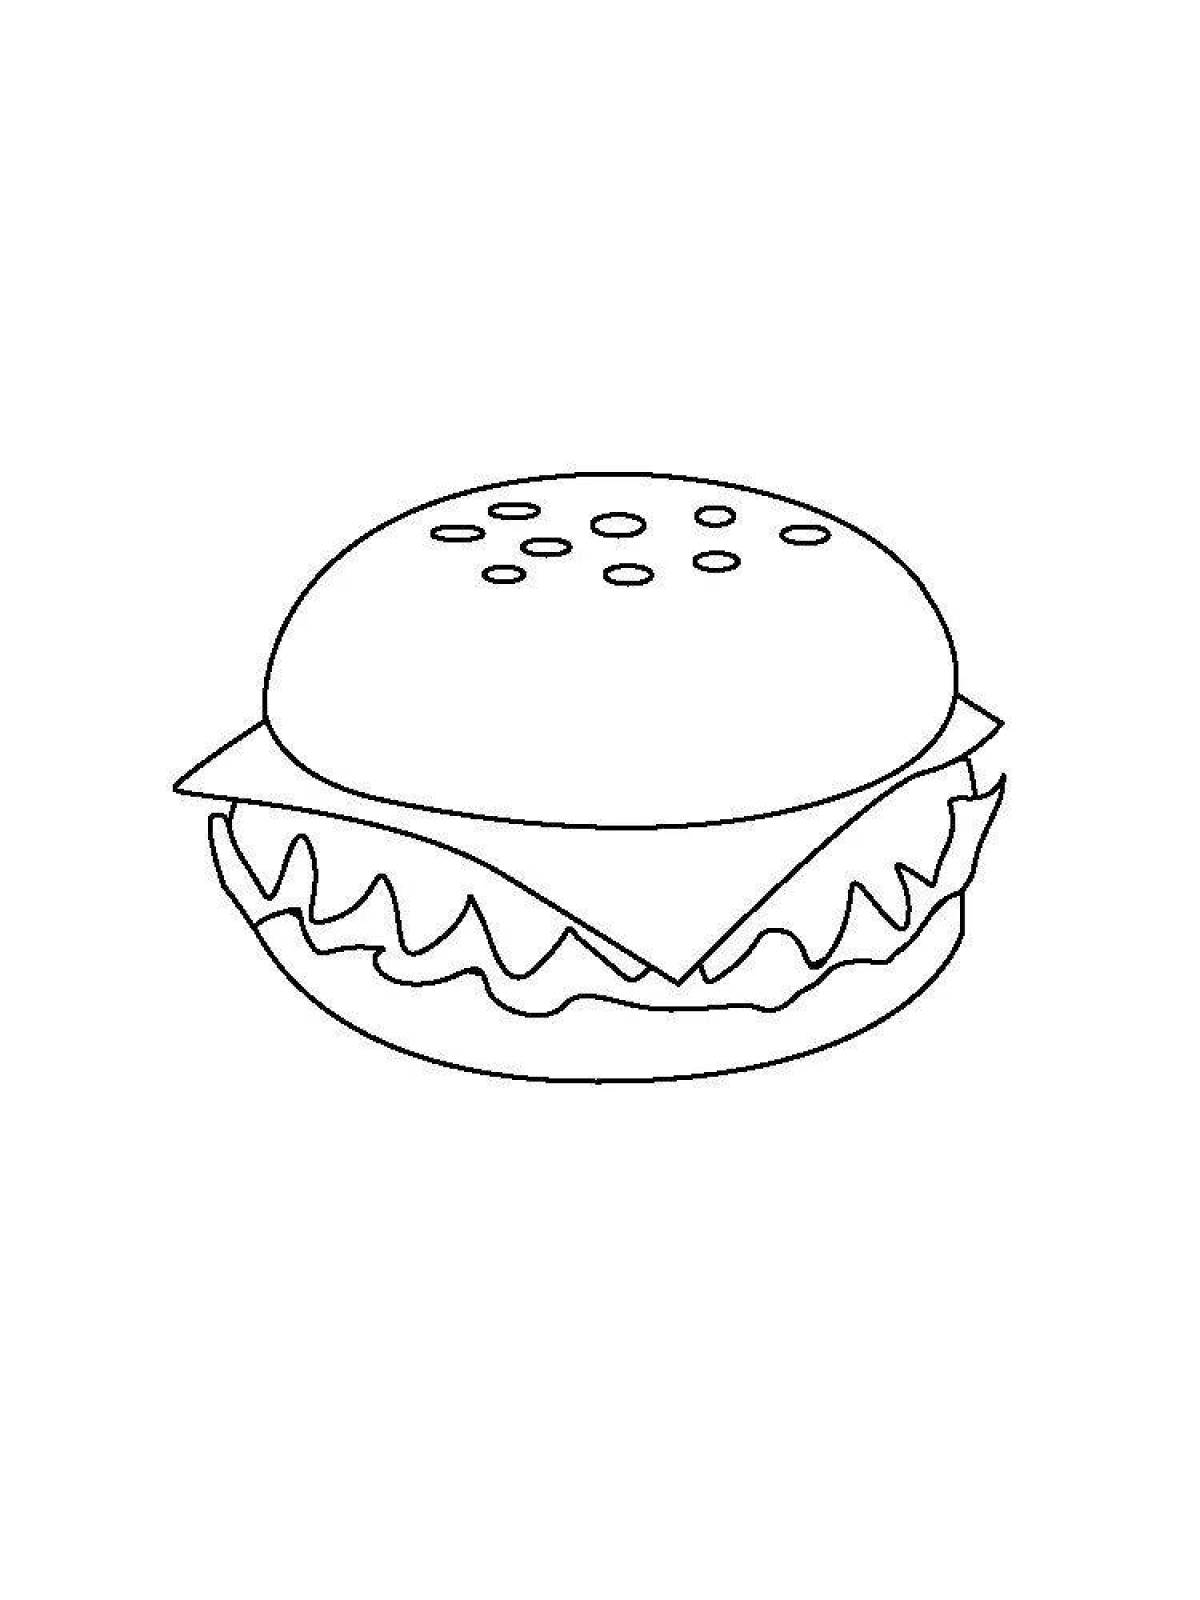 Tempting hamburger coloring page